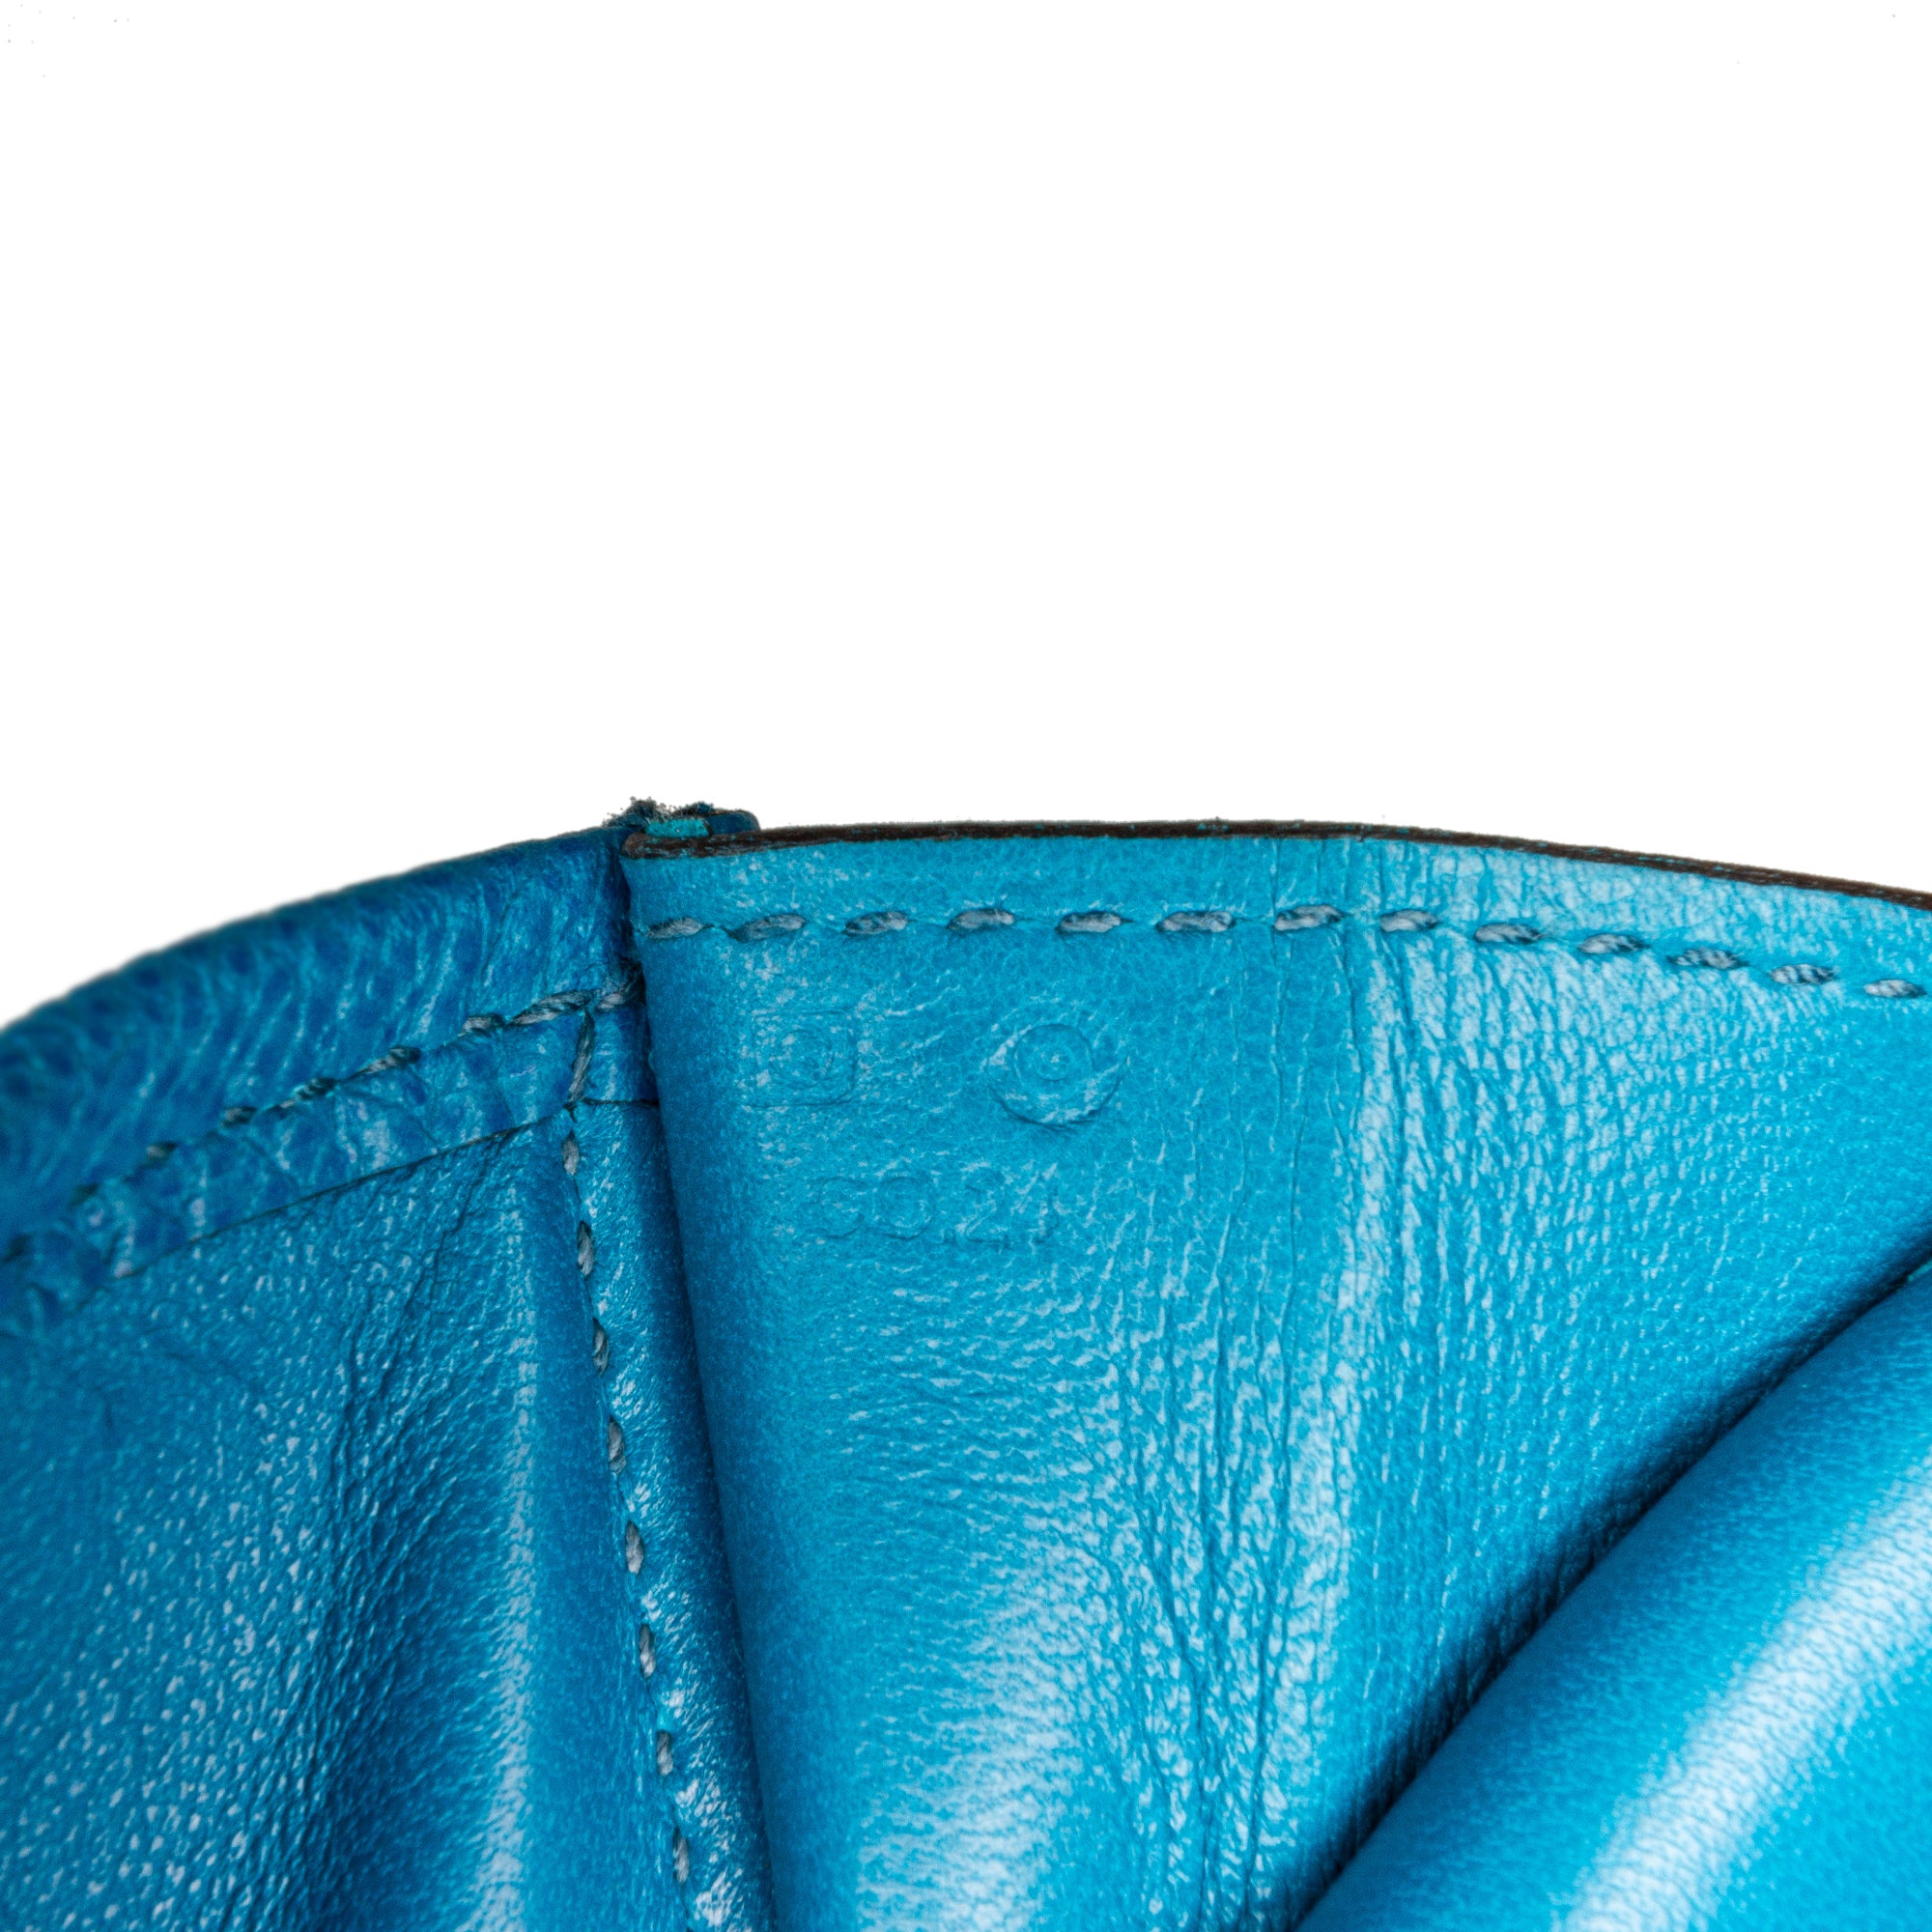 Hermes Jige Elan Clutch Swift 29 Bleu Electrique in Swift Leather - US